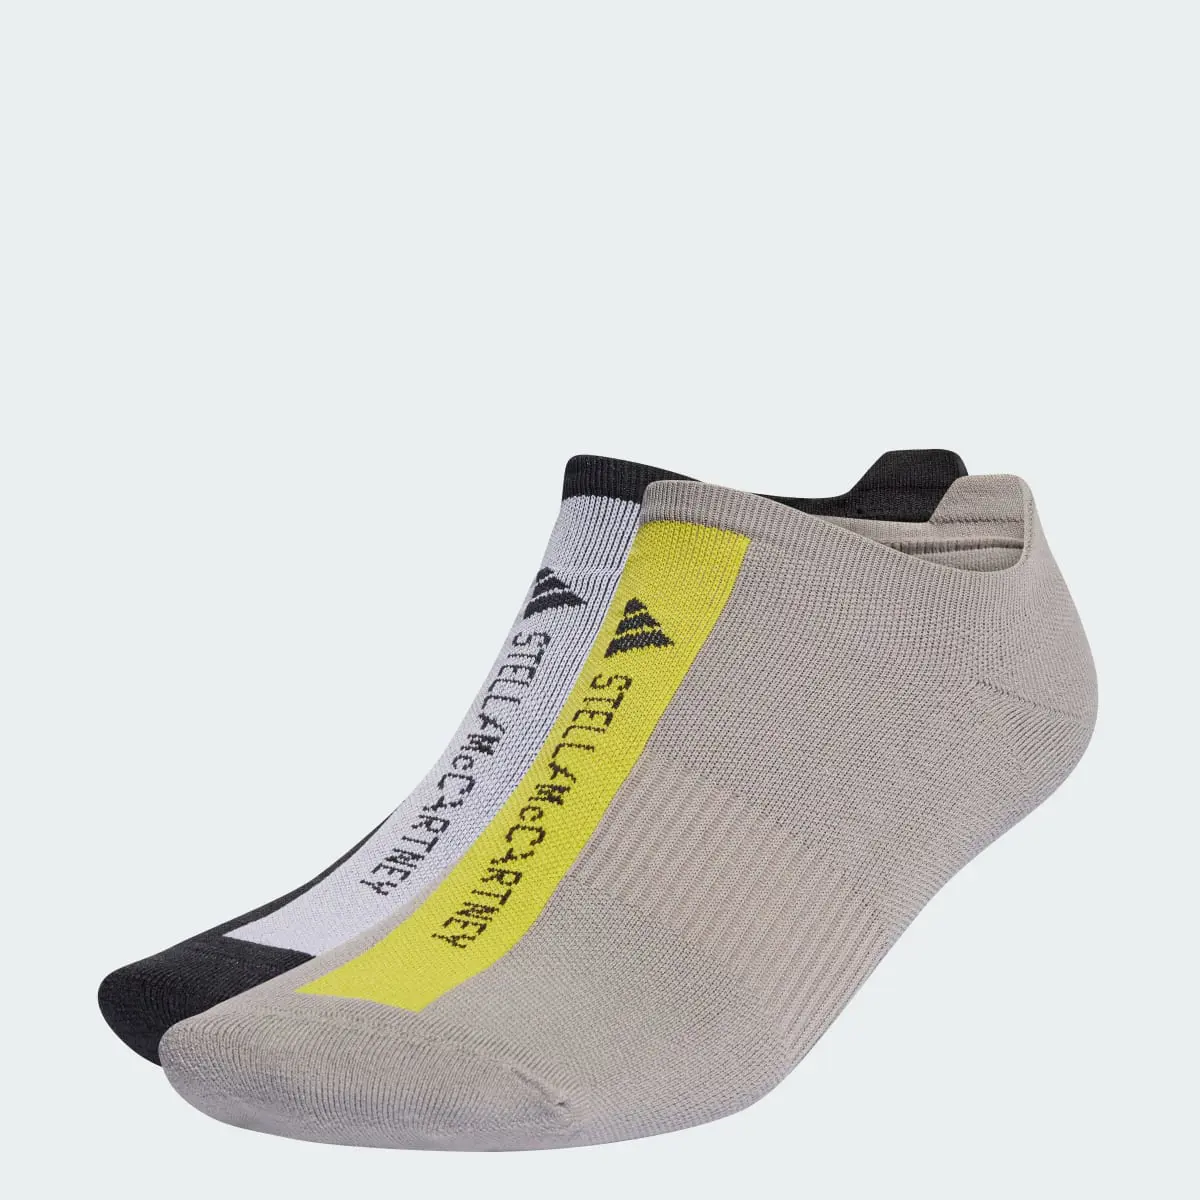 Adidas by Stella McCartney Low Socks. 2